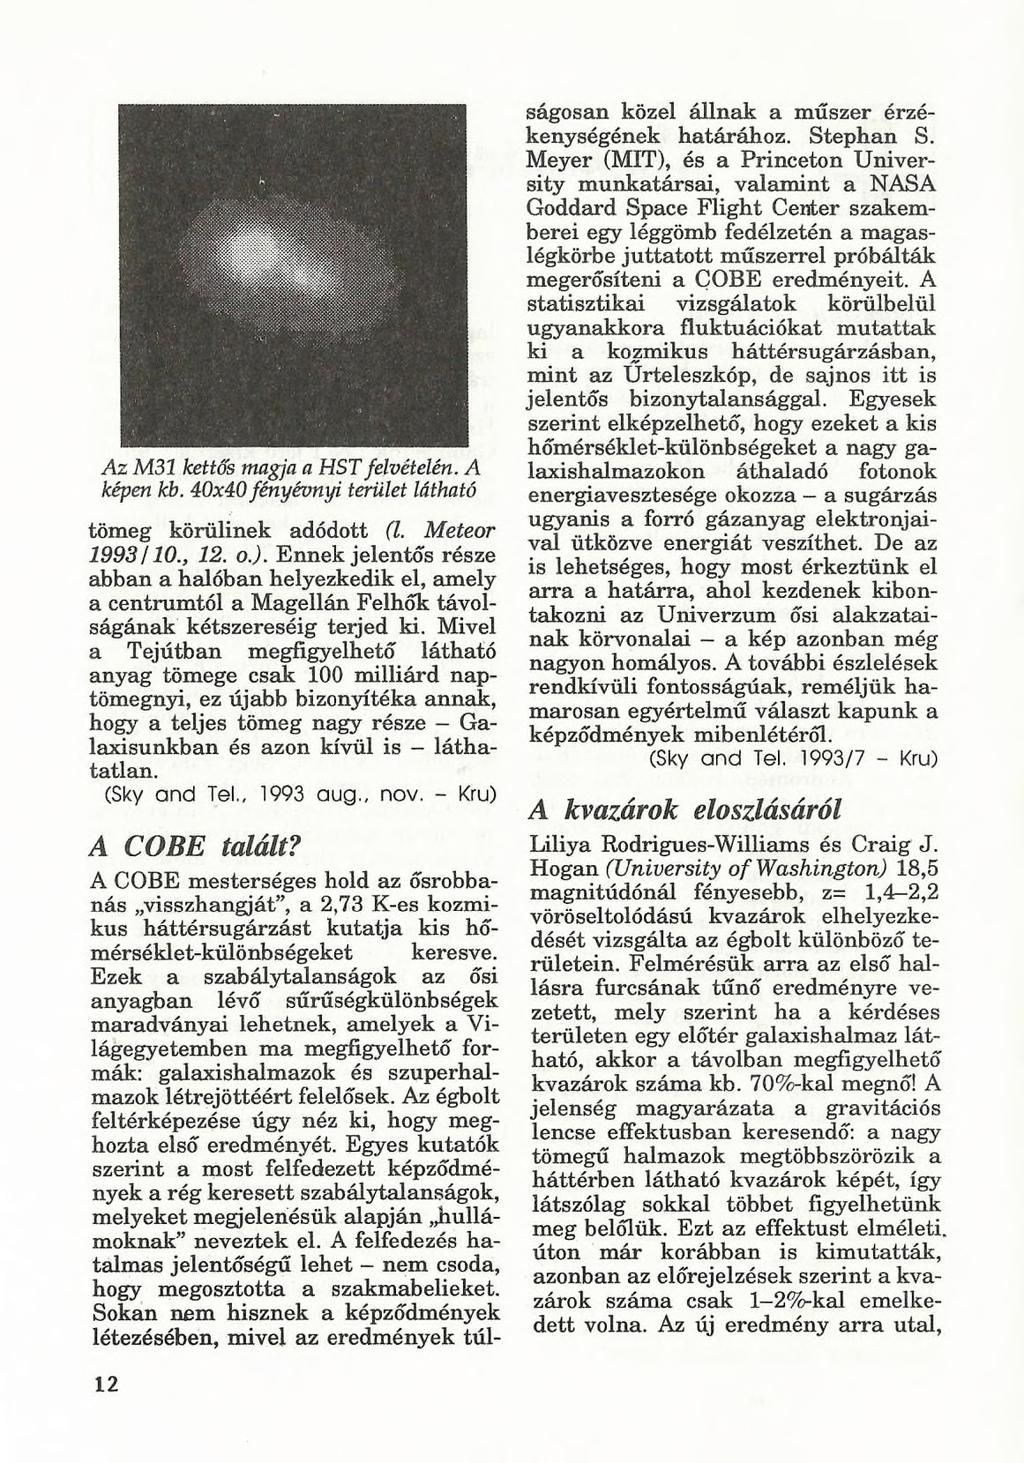 Az M31 kettős magja a HST felvételén. A képen kb. 40x40fényévnyi terület látható tömeg körülinek adódott (l. Meteor 1993/10., 12. o.j. Ennek jelentős része abban a halóban helyezkedik el, amely a centrumtól a Magellán Felhők távolságának kétszereséig terjed ki.